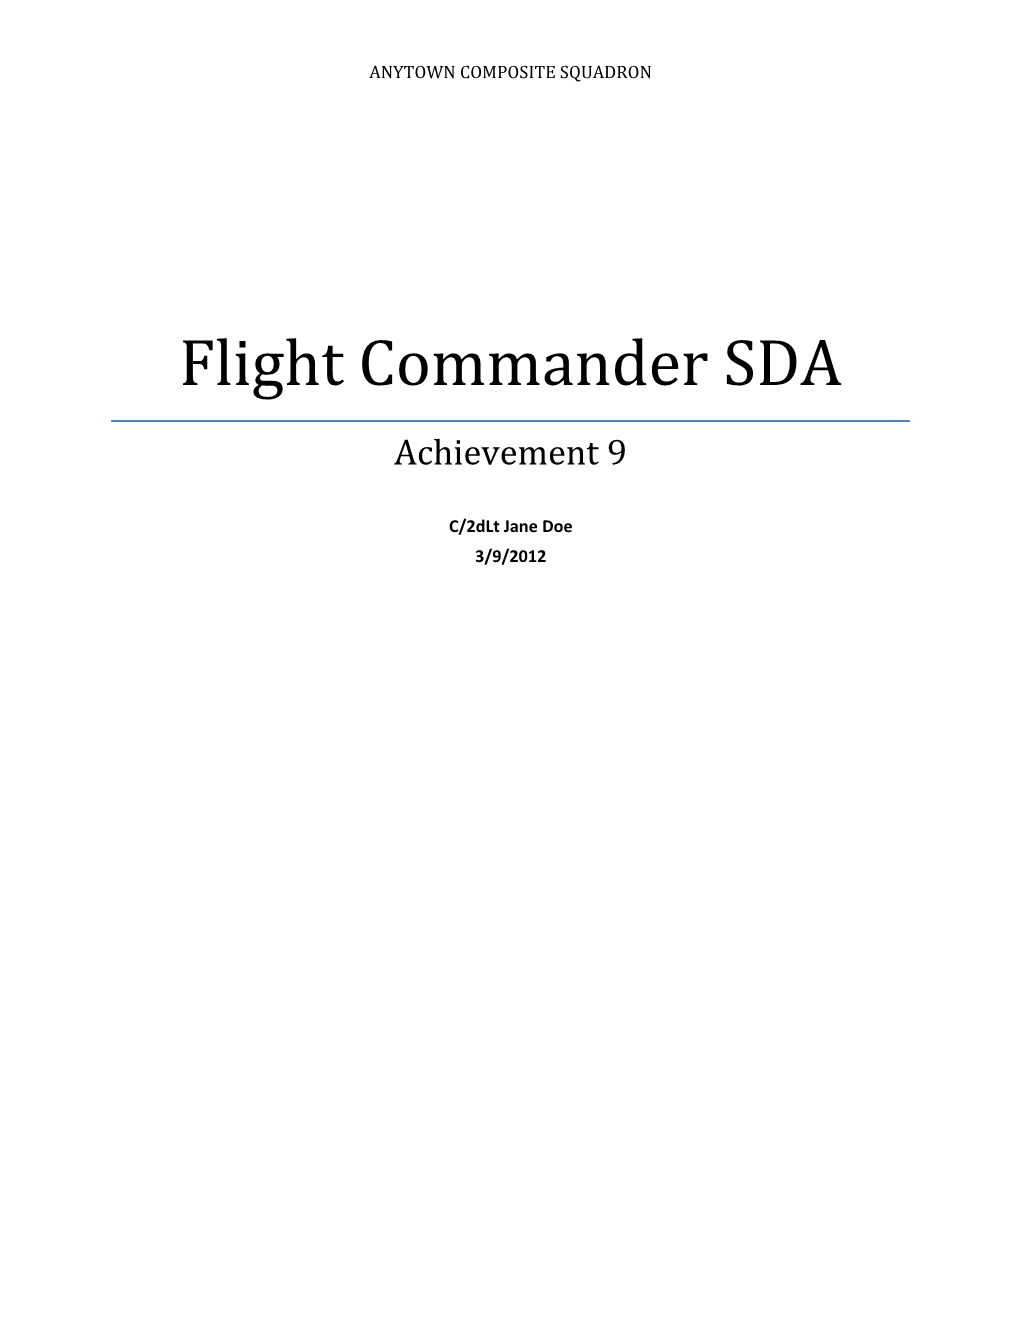 Flight Commander SDA